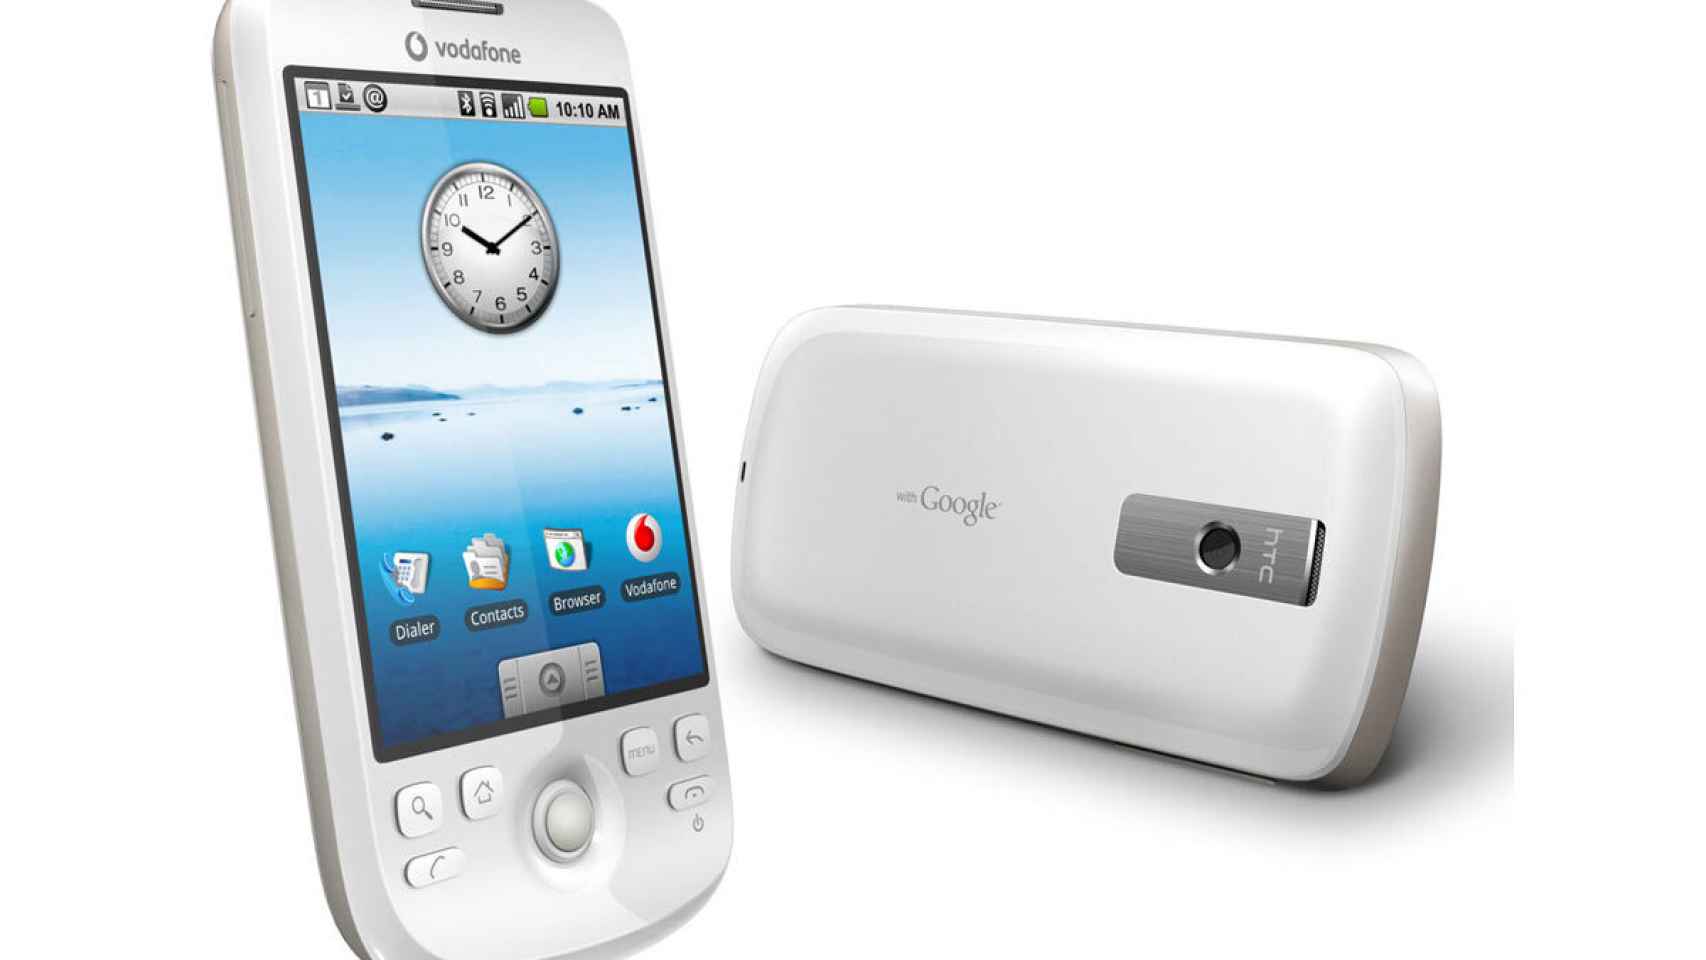 Móviles emblemáticos de Android: edición HTC Magic